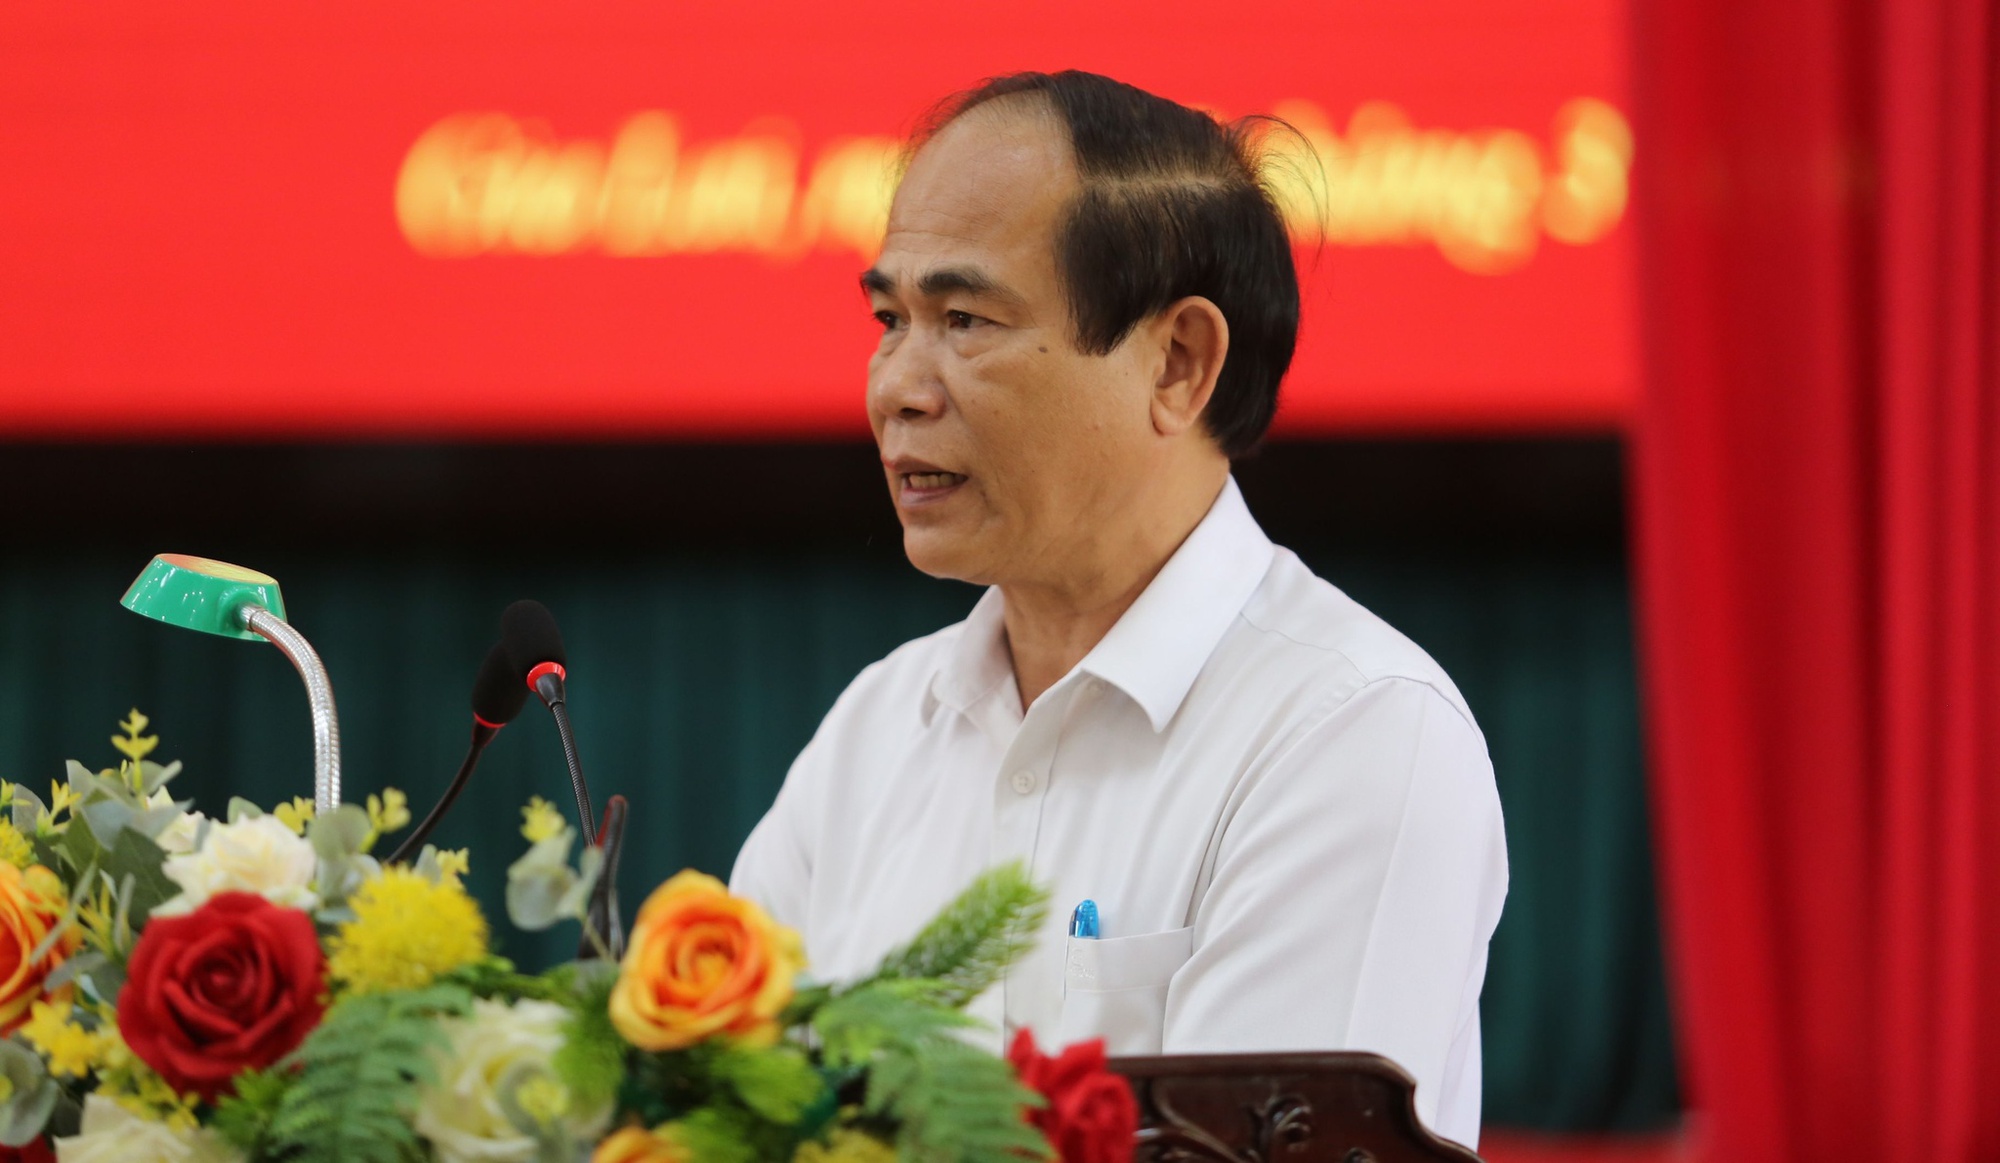 Chủ tịch tỉnh Gia Lai Võ Ngọc Thành bị cách chức và xóa tư cách - Ảnh 1.